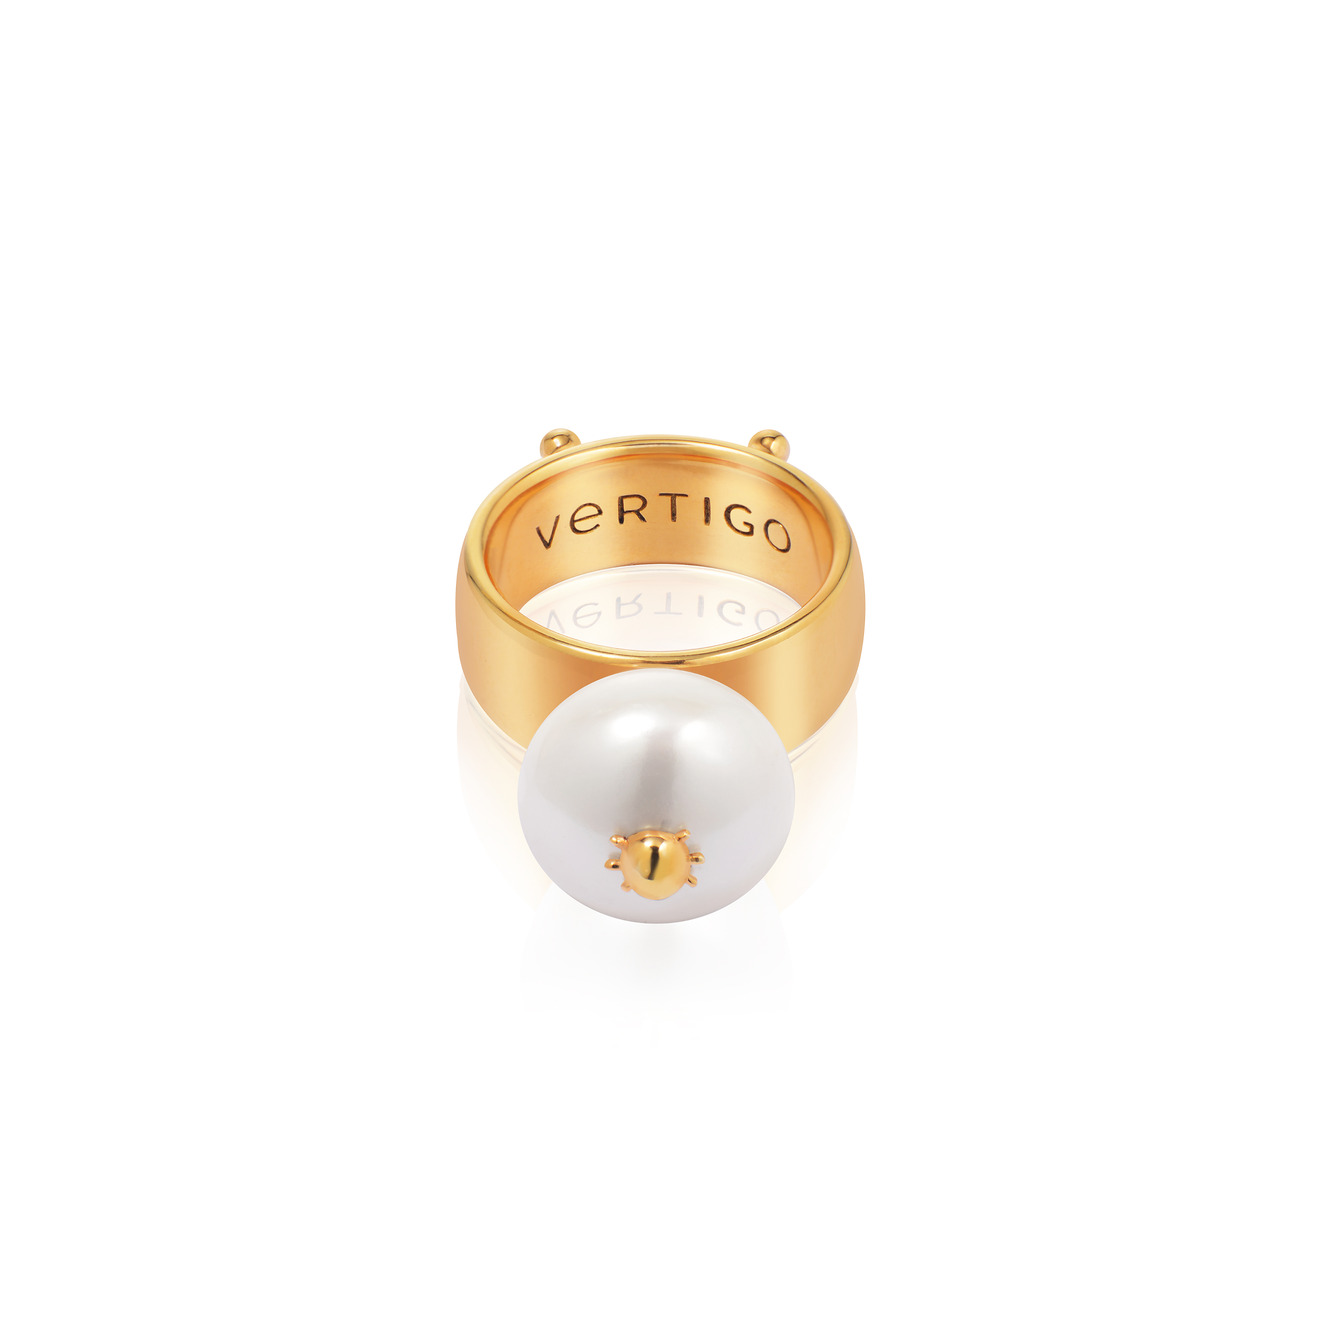 Vertigo Jewellery Lab Позолоченное кольцо СLEOPTR LADYBUG RING из серебра с речным жемчугом vertigo jewellery lab кольцо сleoptr ladybug ring из серебра с речным жемчугом